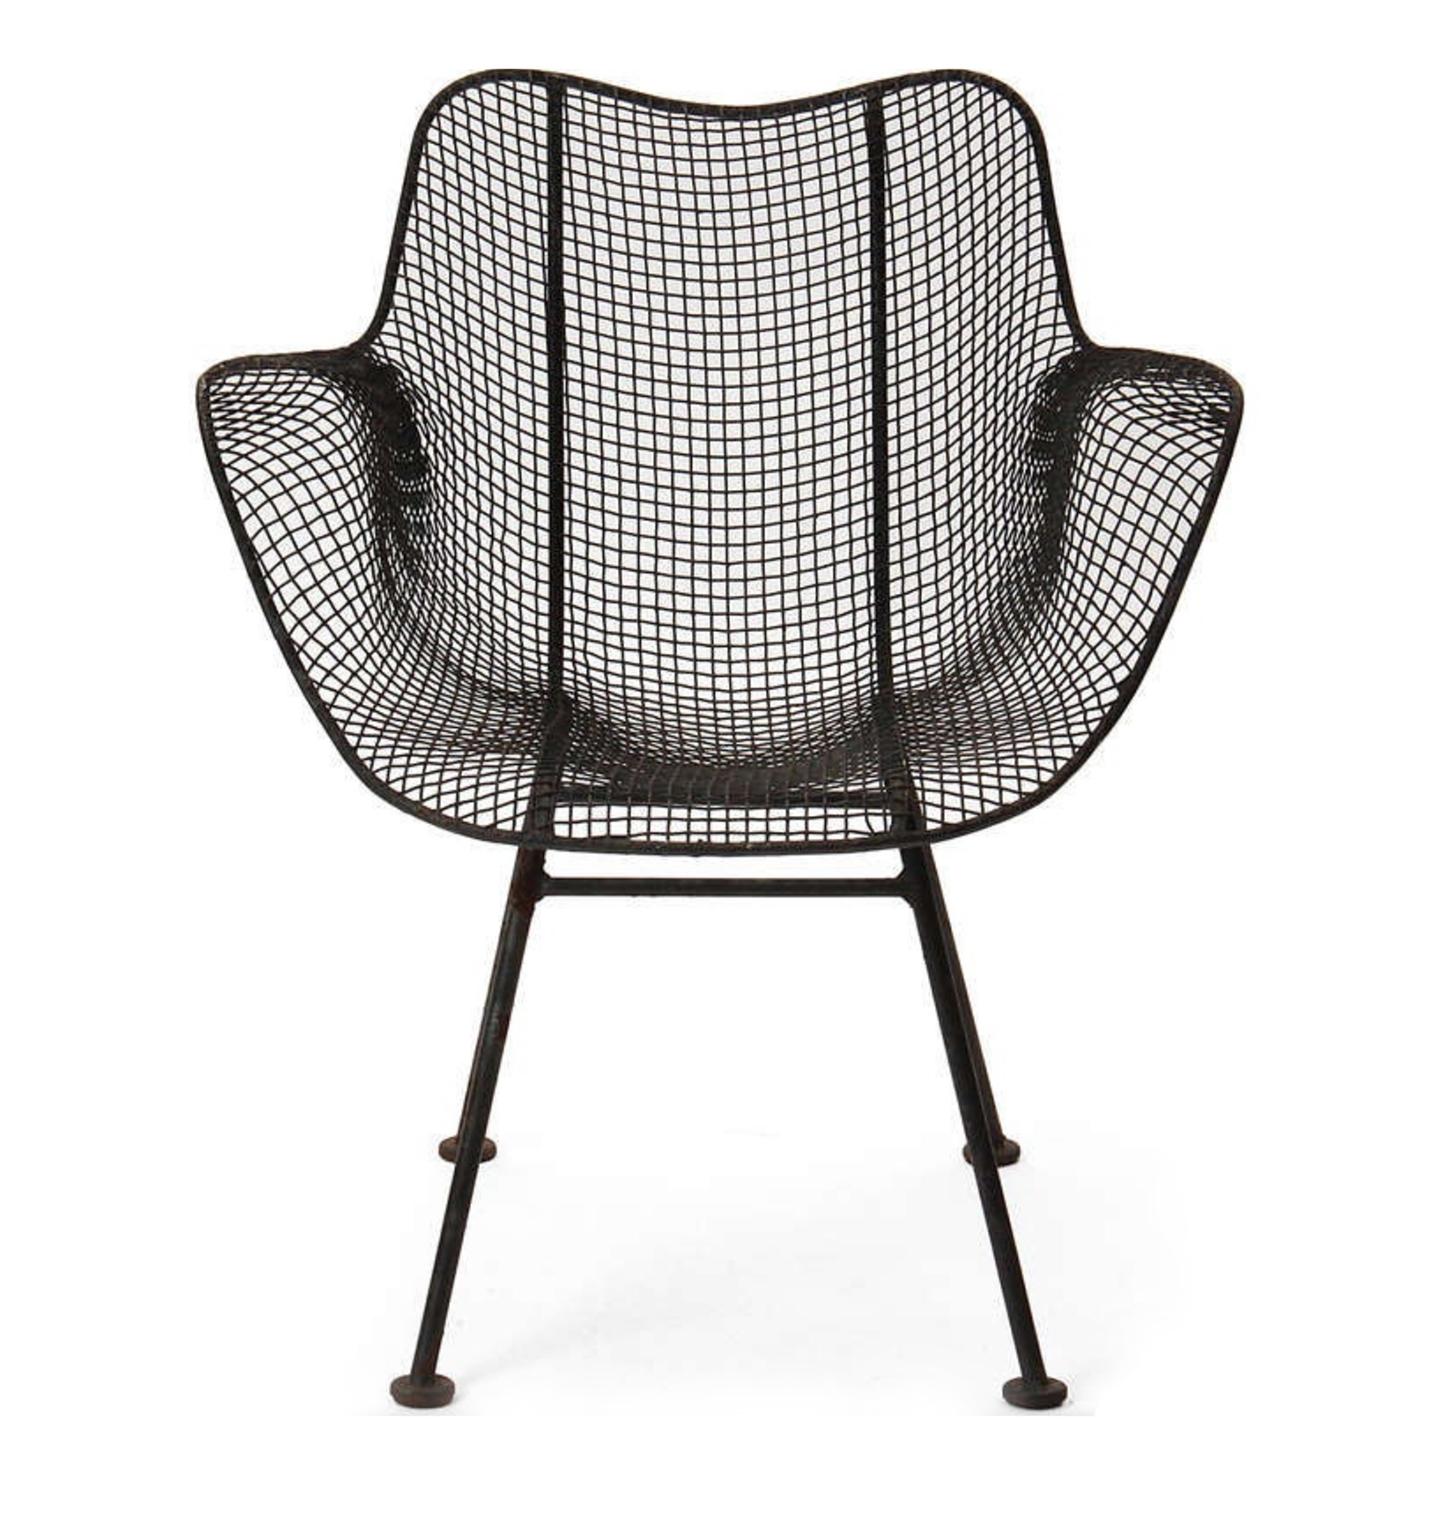 Ensemble de (10) fauteuils Patio mi-siècle Russell Woodard sculptura mesh organiquement sculpté. Chaises de patio d'extérieur au design très iconique. Toutes les chaises sont d'origine Circa 1960 - elles ont été repeintes avec une peinture noire